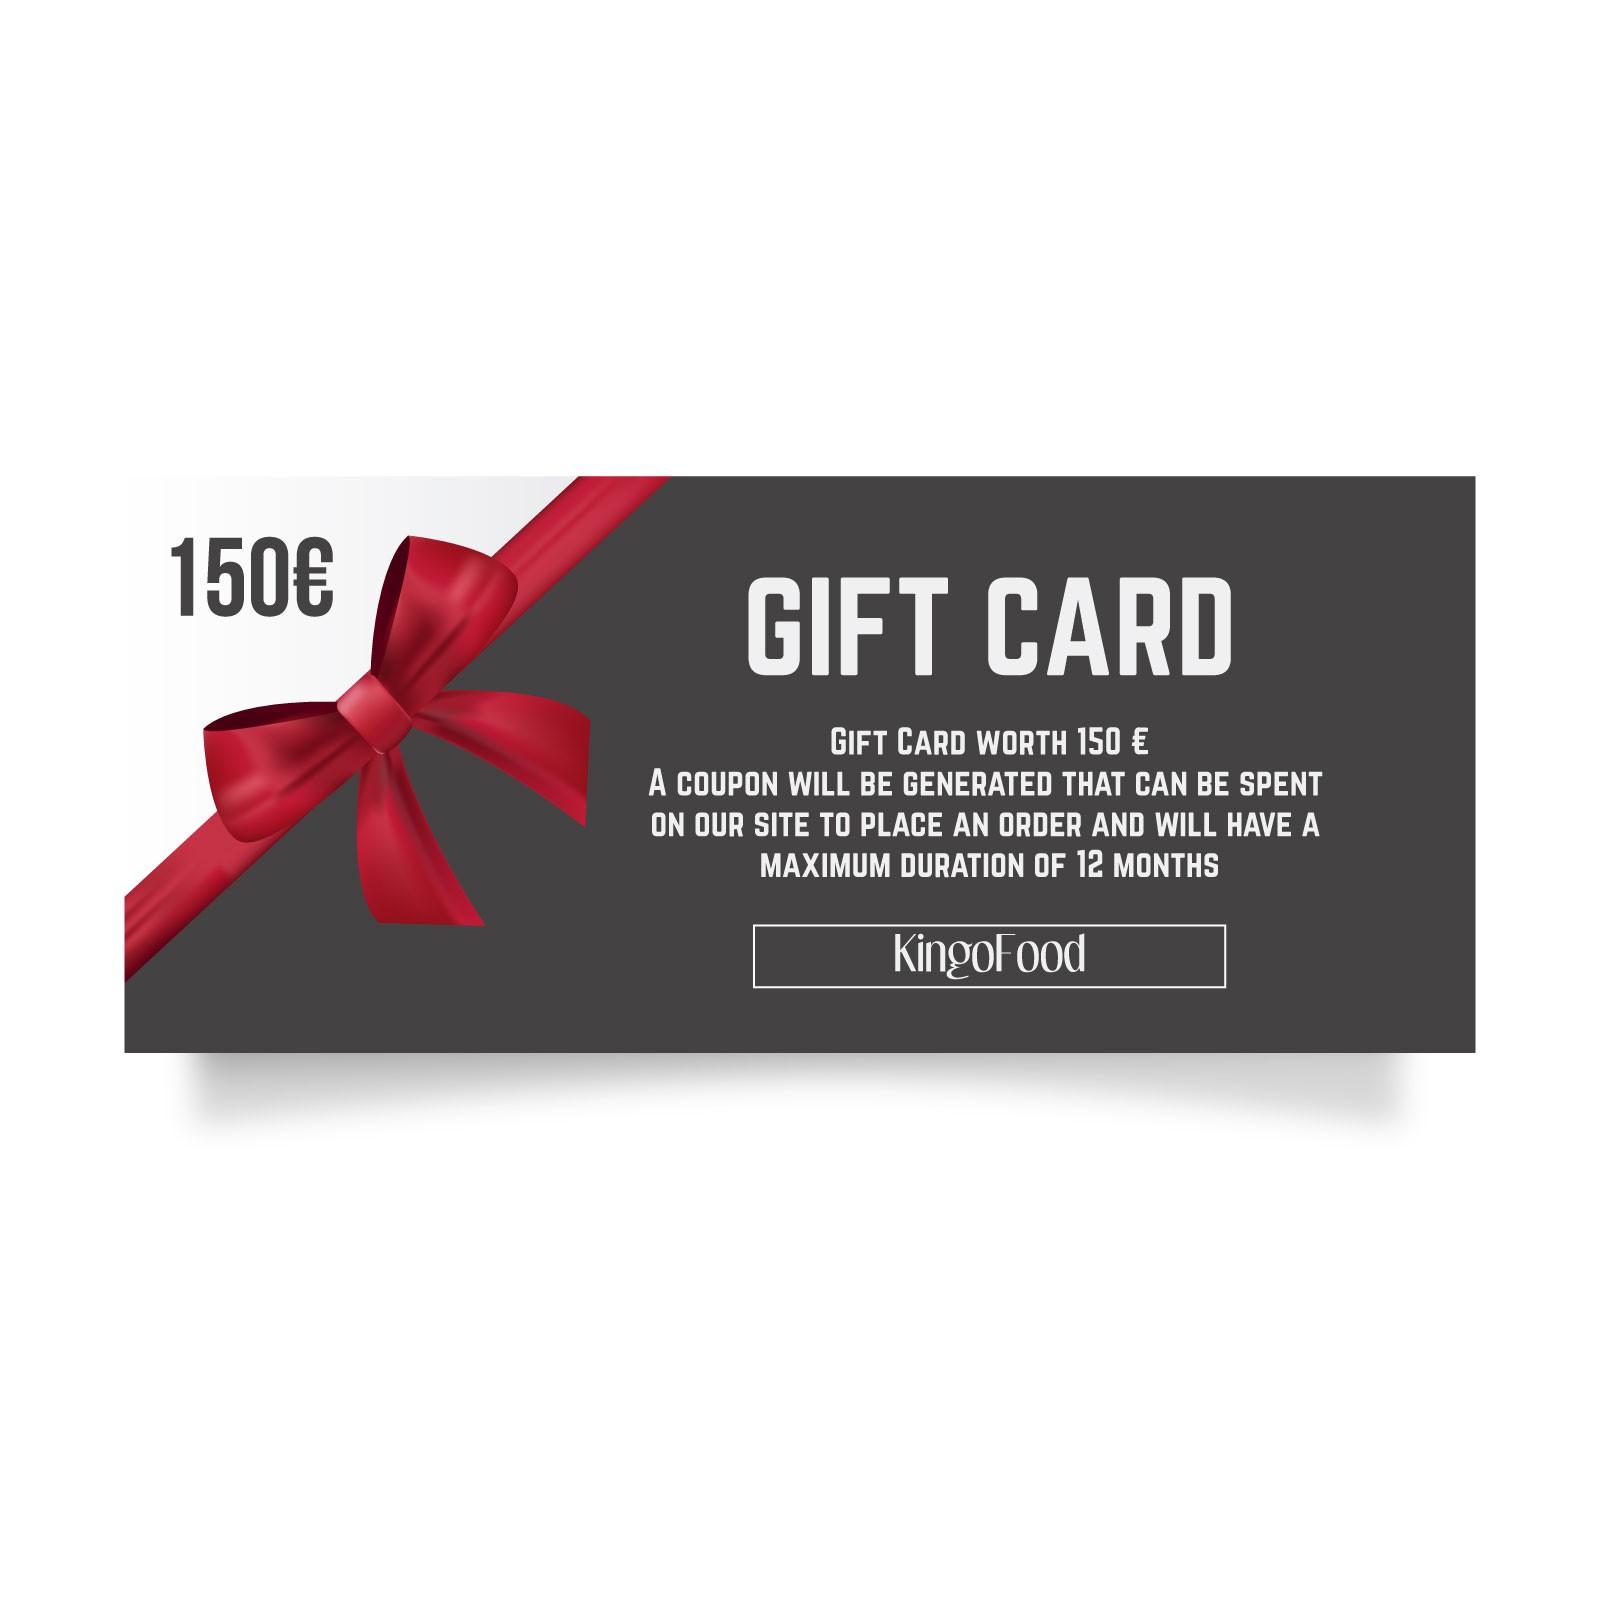 Gift Card del valore di 150 €
Verrà generato un coupon che potrà essere speso sul sito www.kingofood.com per effettuare un ordine ed avrà la durata massima di 24 mesi.
Per altre informazioni potete contattarci!